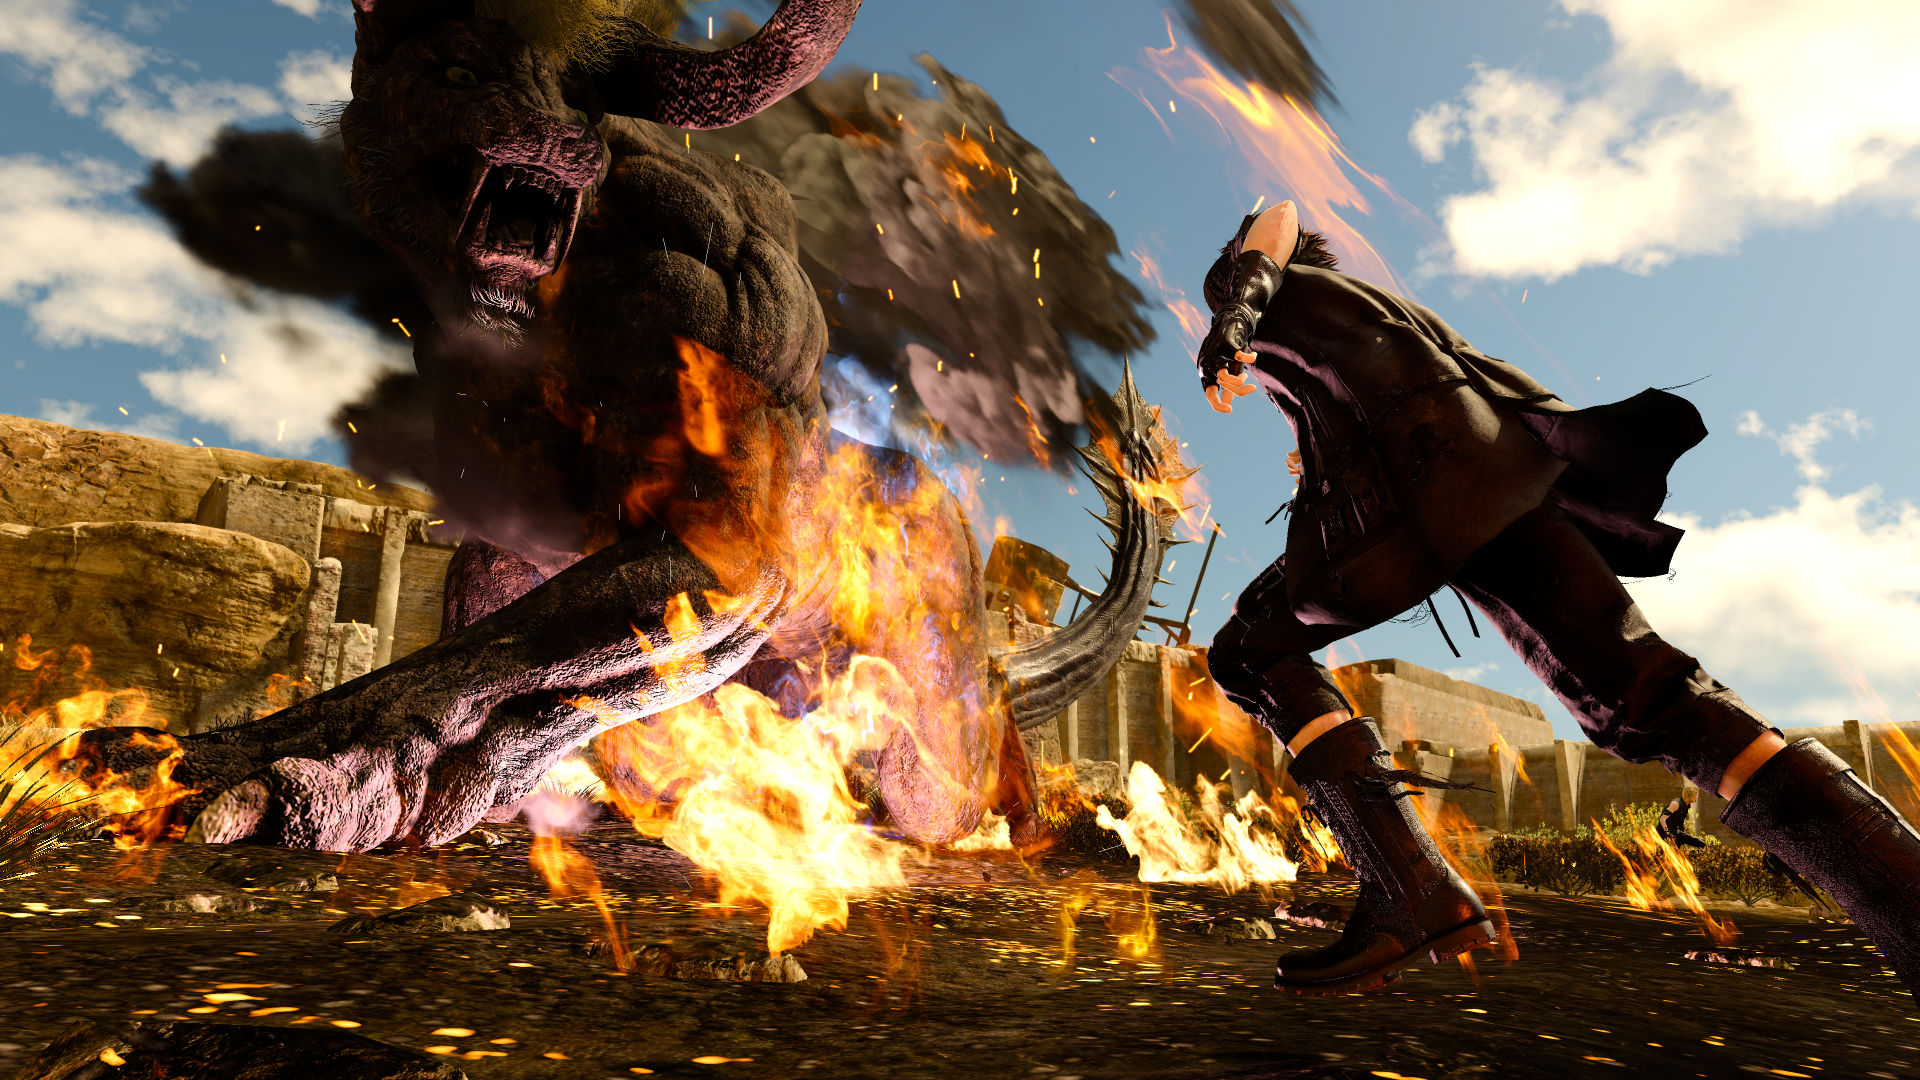 Noctus atacando a una bestia gigante con cuernos en llamas.